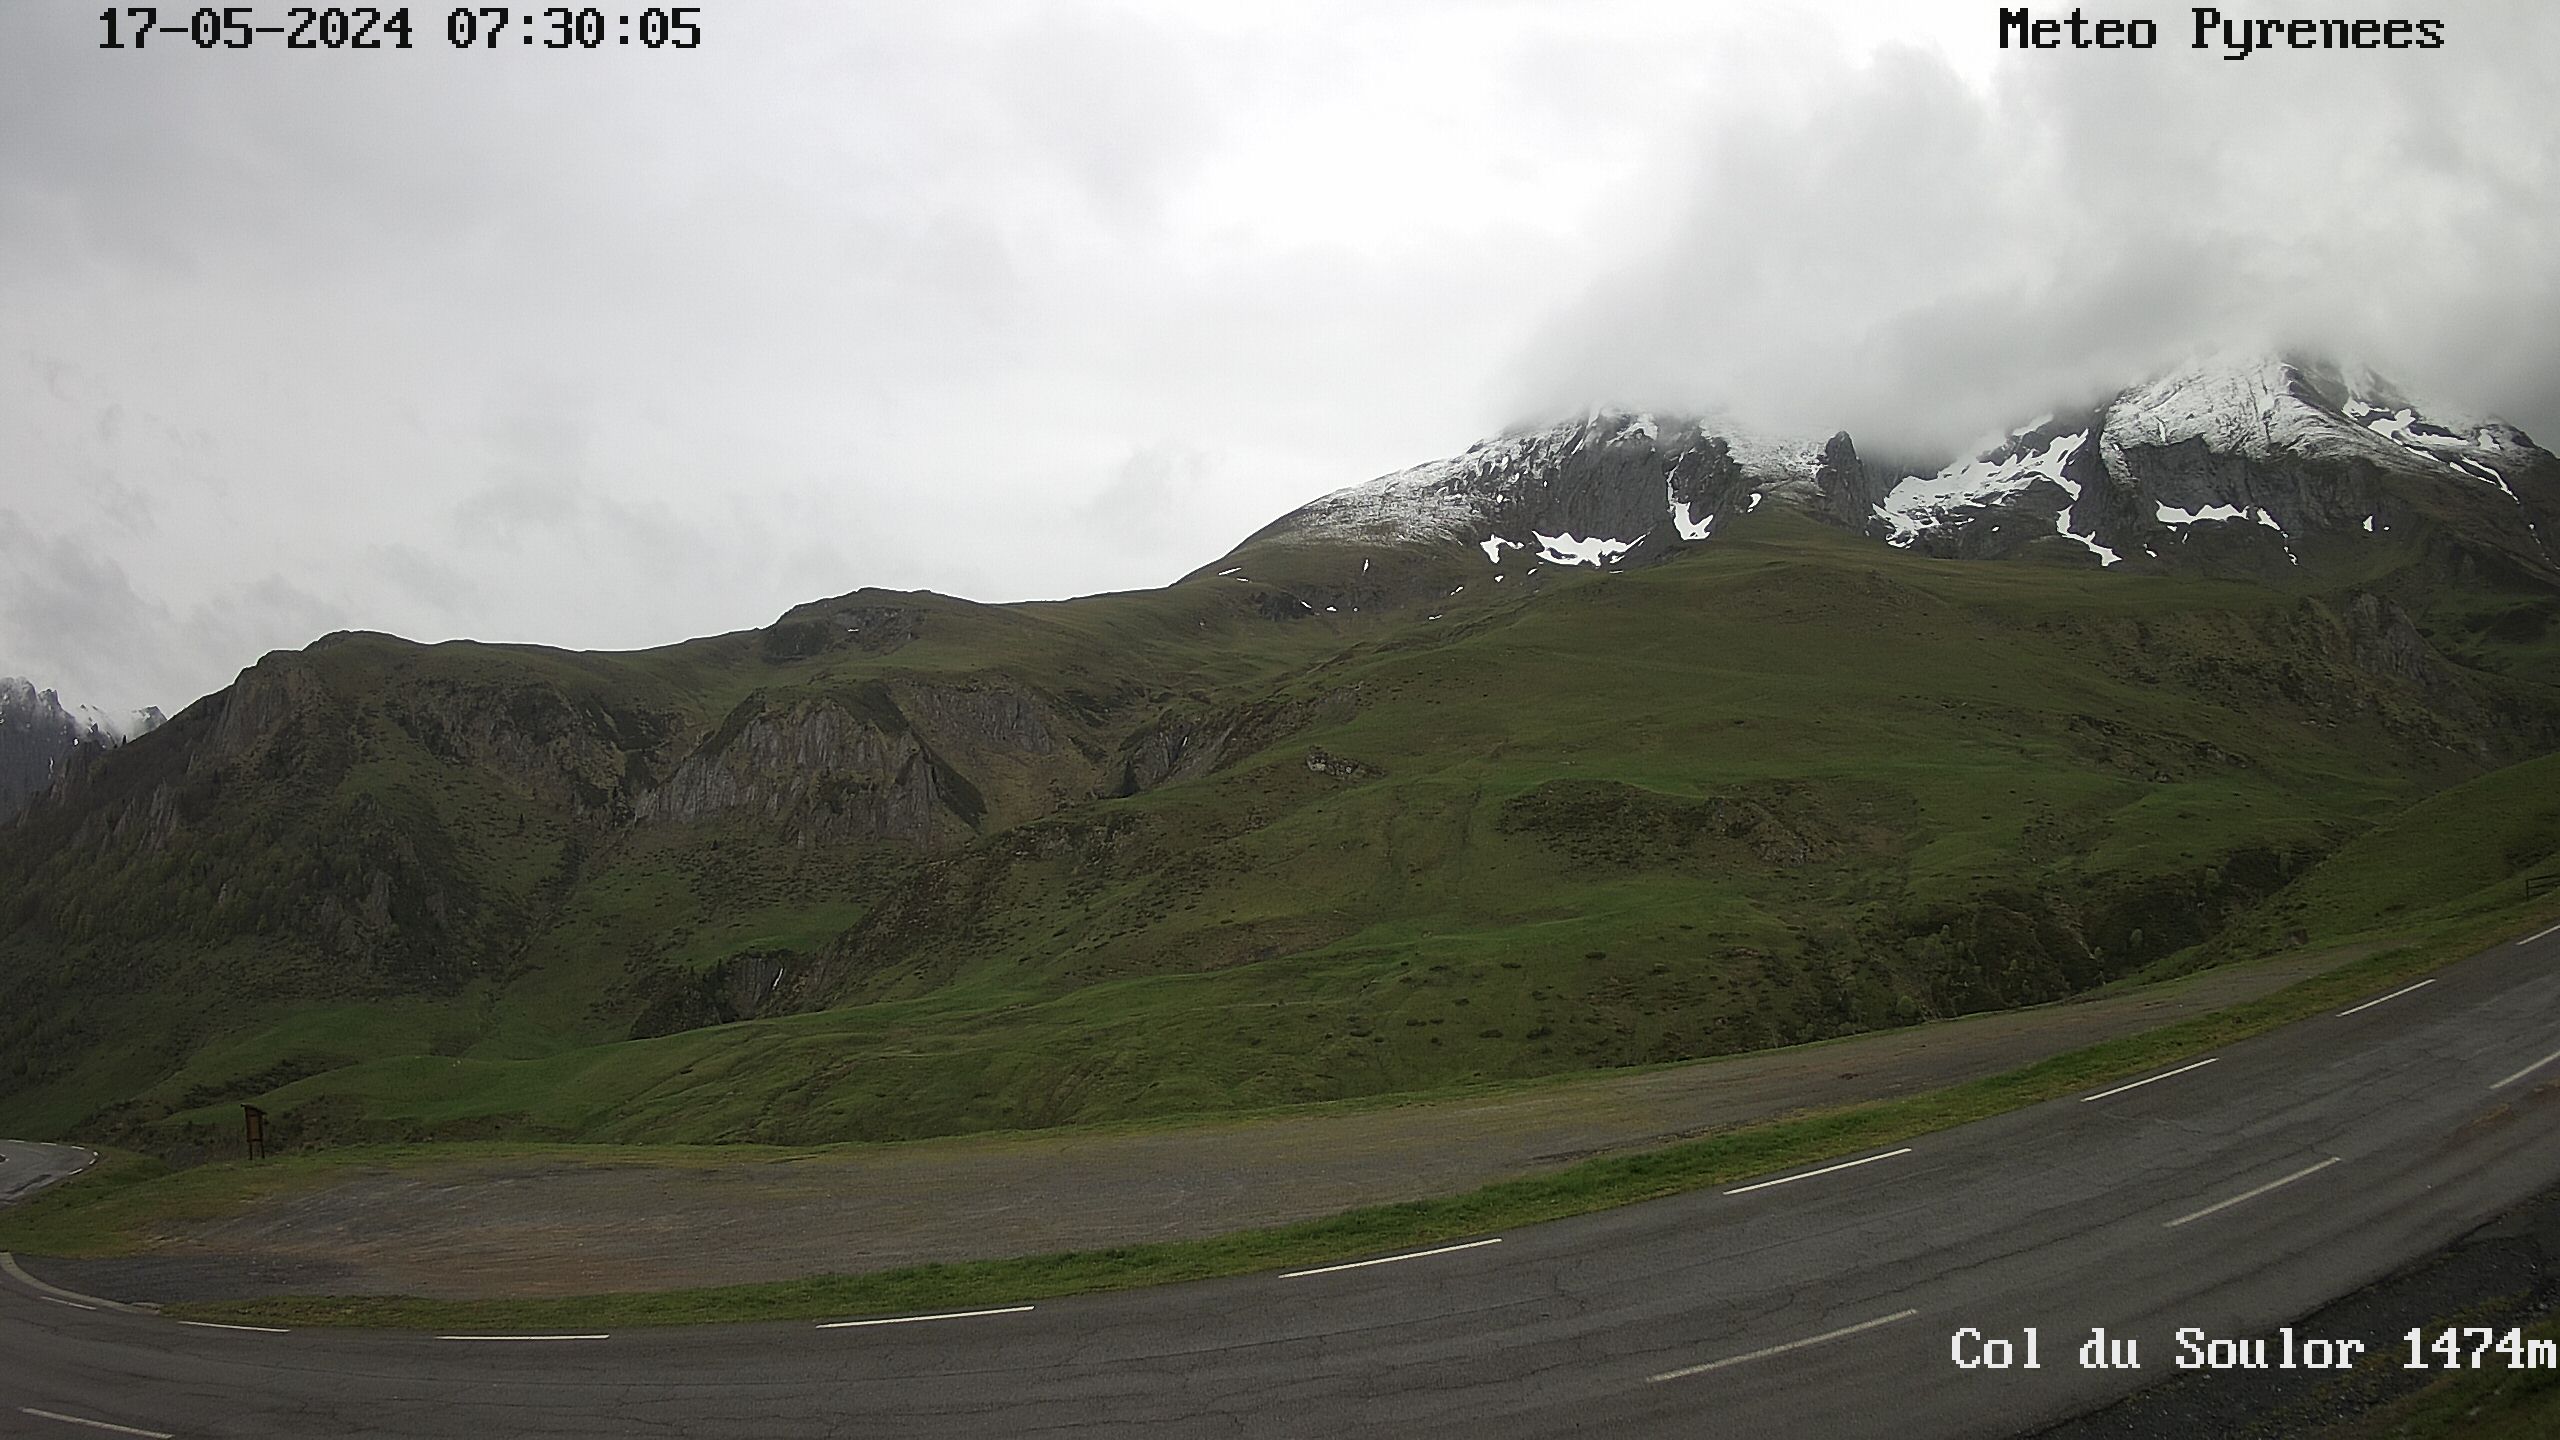 <h2>Webcam située au niveau du col de Soulor dans les Hautes Pyrénées</h2>